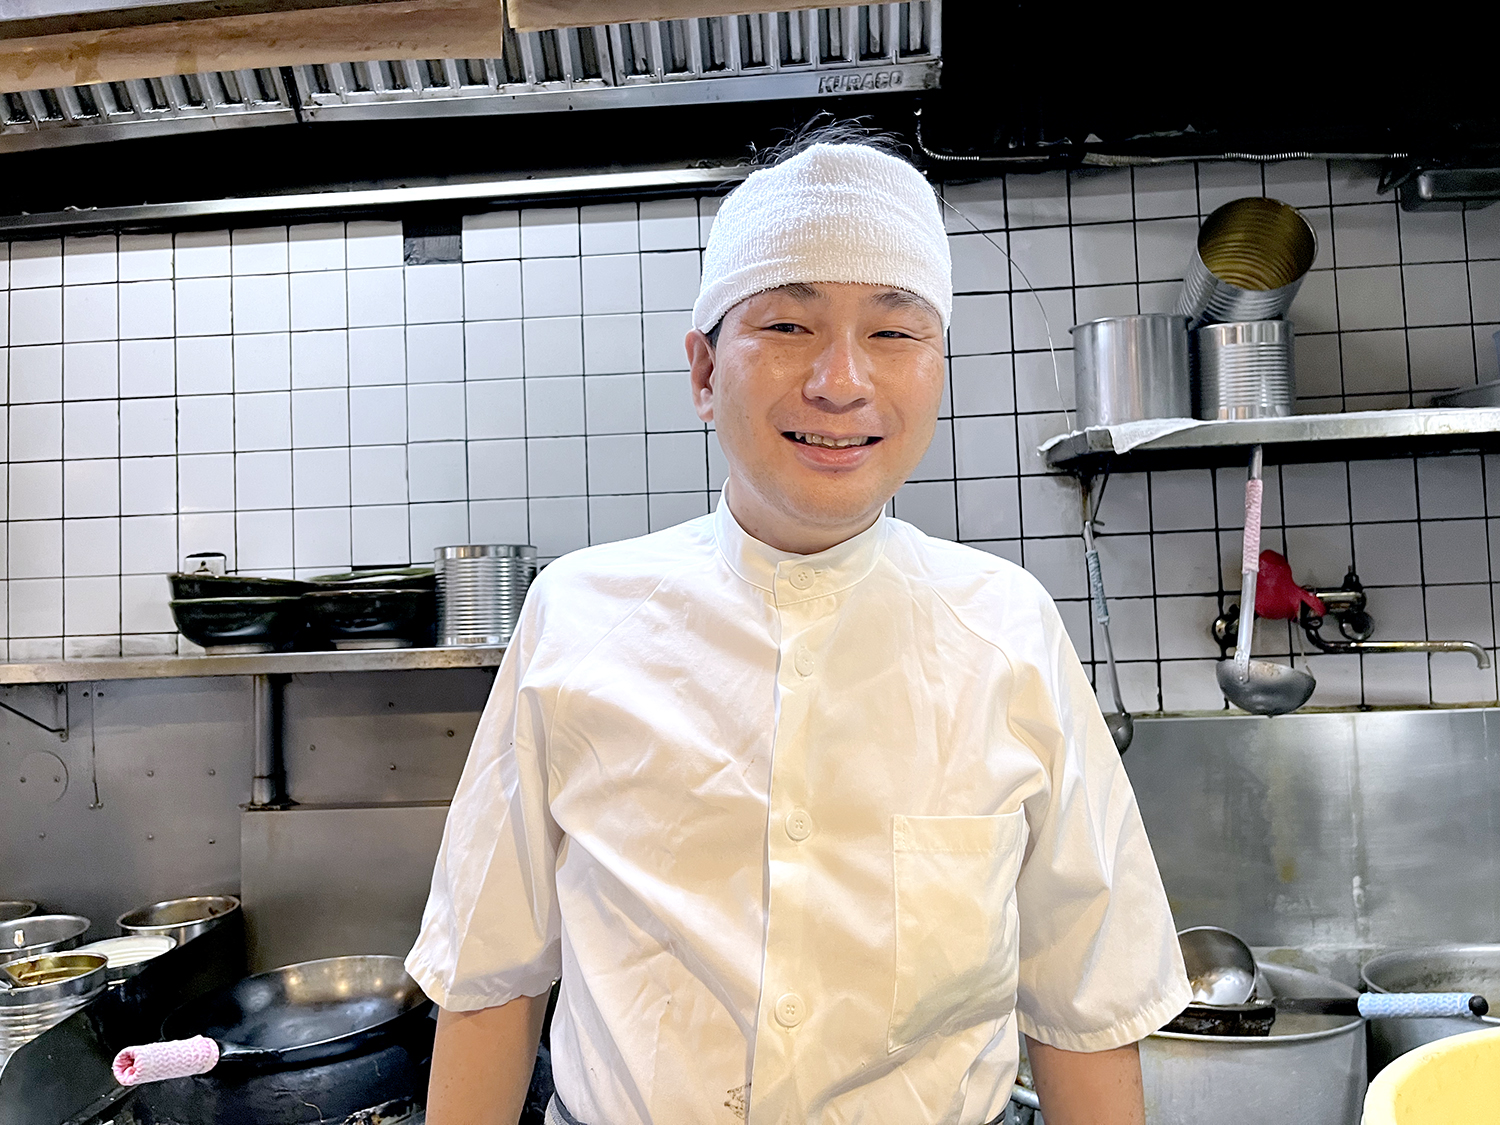 本格中華料理店のコックとして働いていた経験をもつ店主の桐林正彦さん。